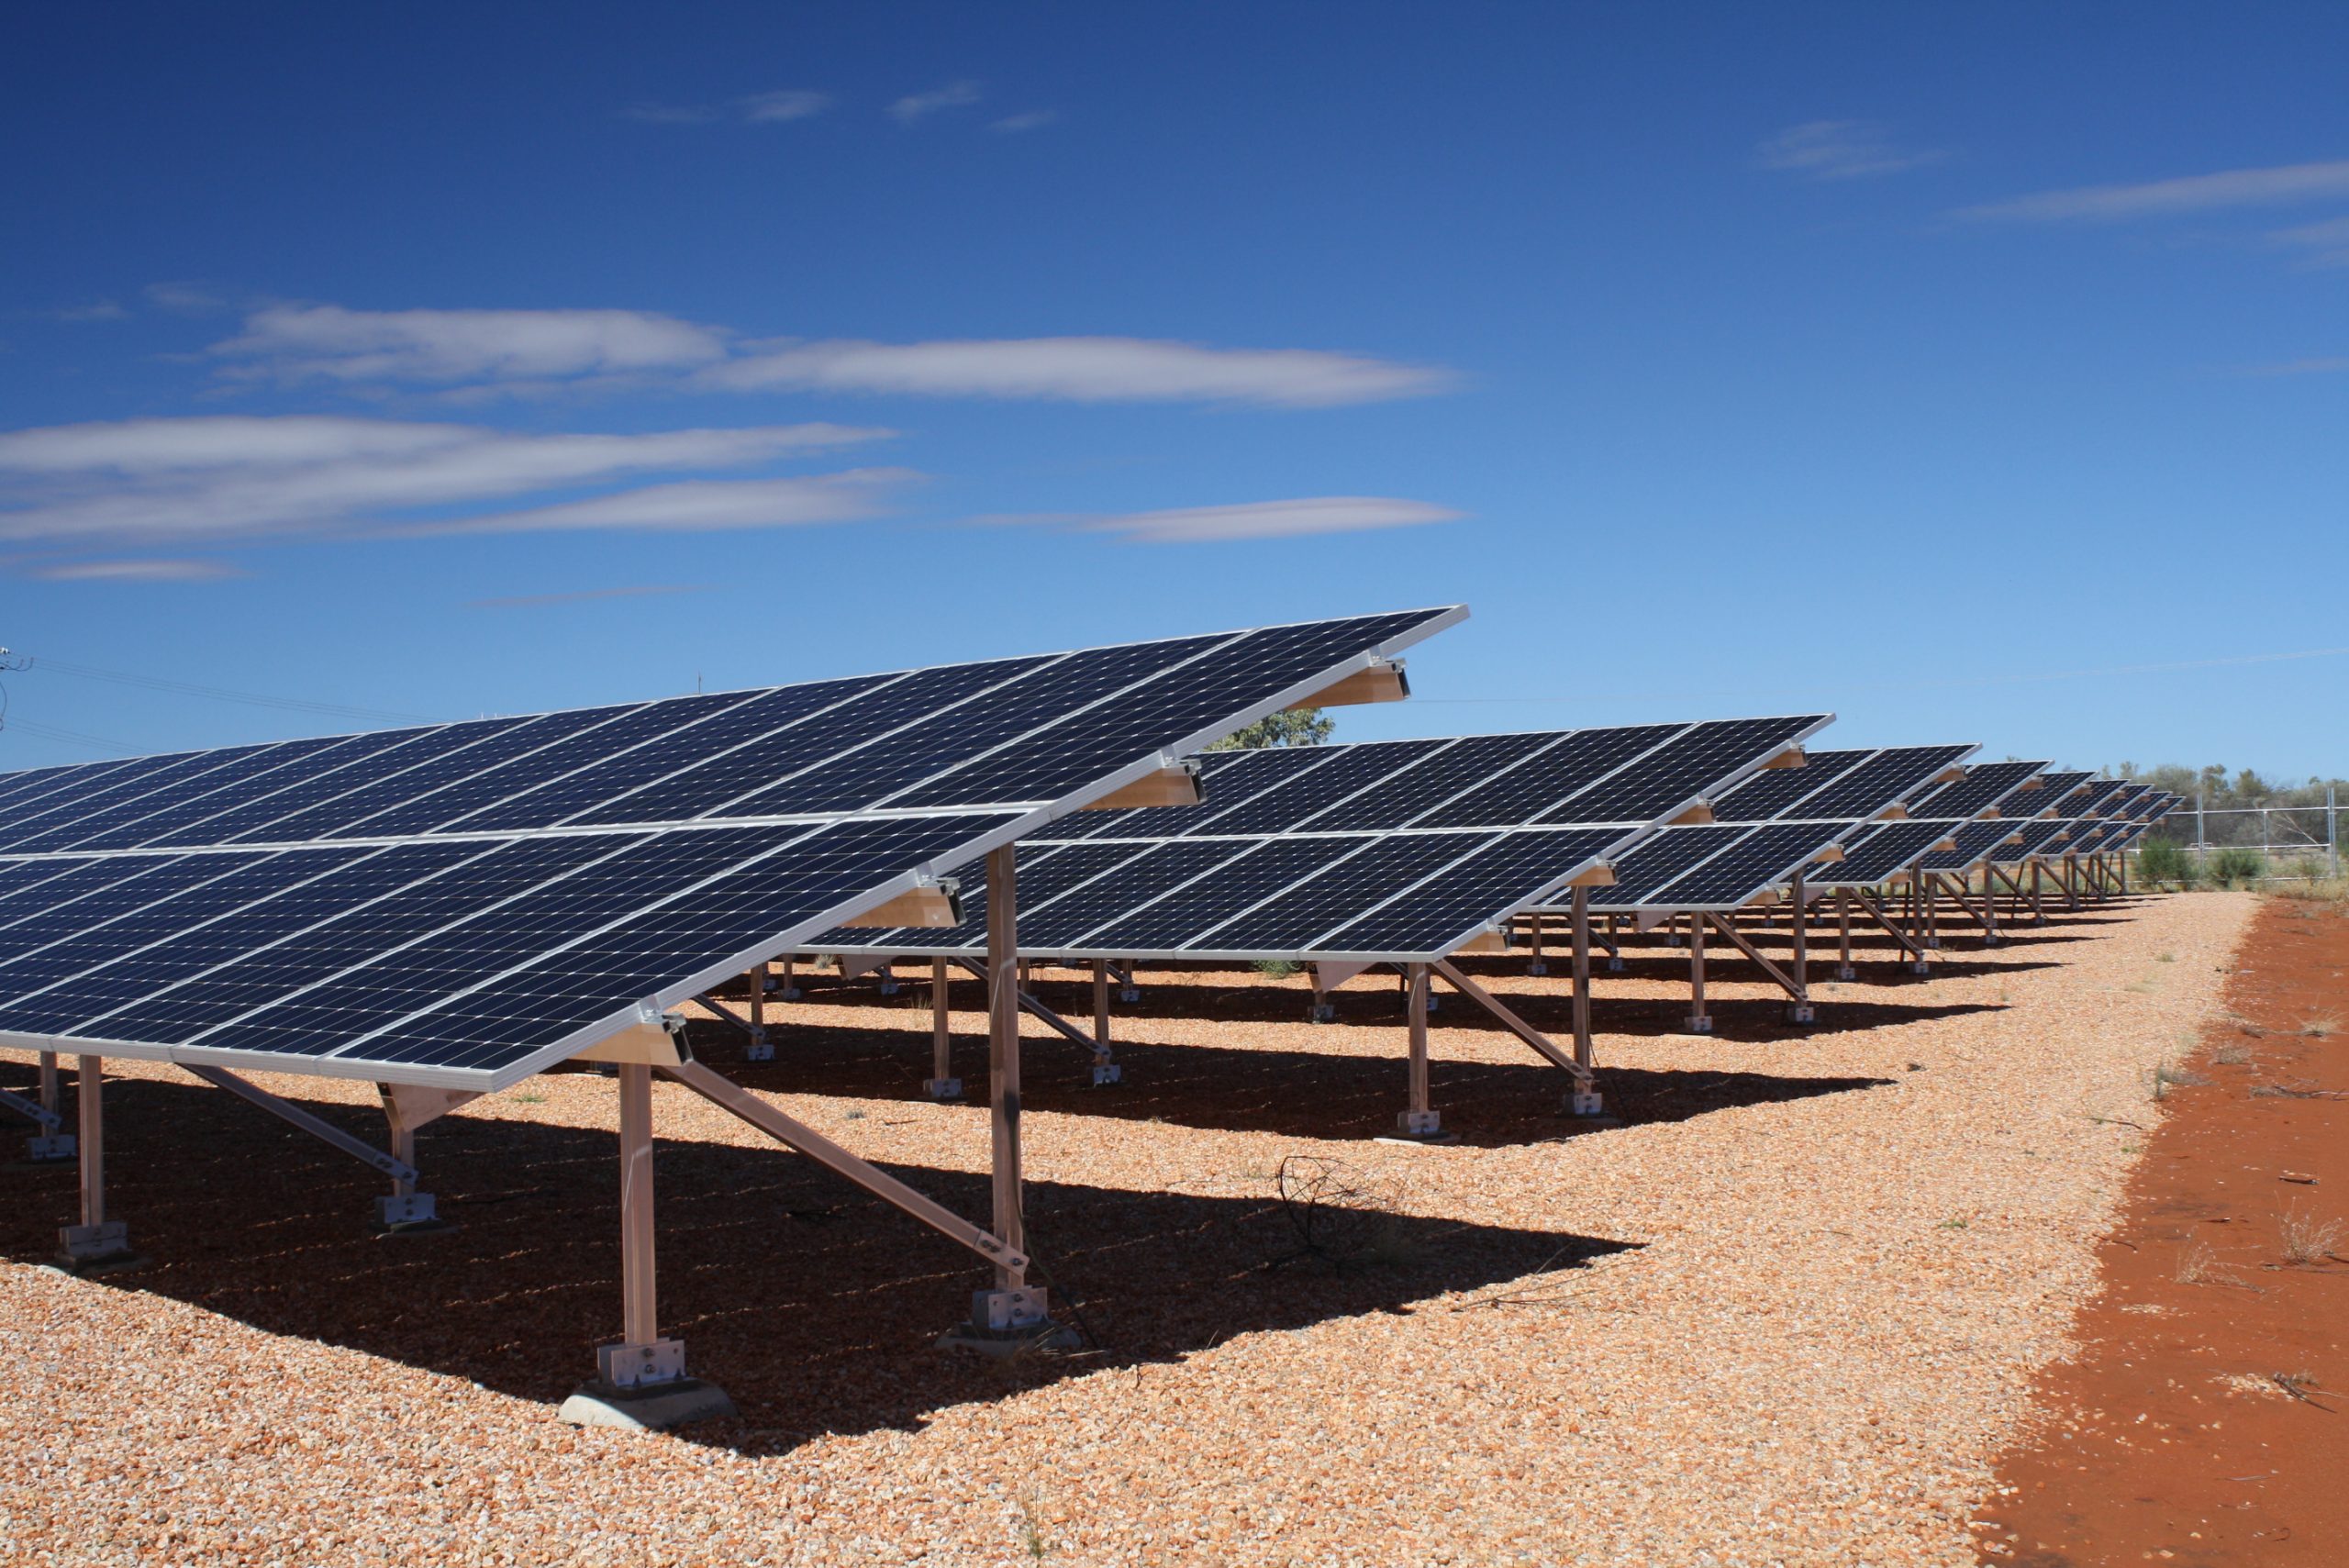 Fazenda de energia solar na Austrália: país da Oceania tem a maior porcentagem de energia gerada pelo sol, 12% ( Foto: Divulgação)